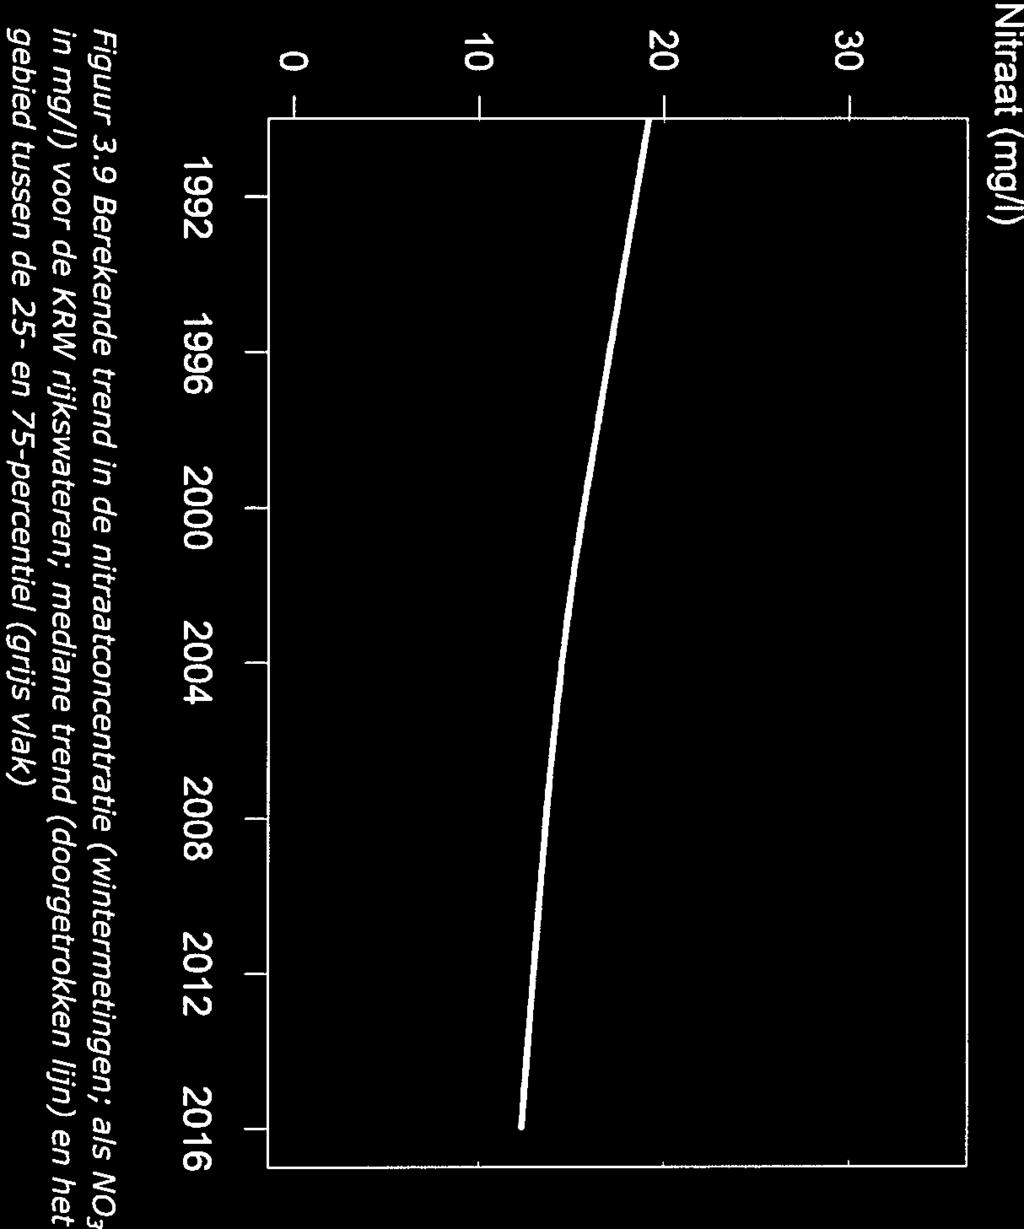 30 - Nitraat (mg/i) Pagina 61 van 84 gebied tussen de 25- en 75-percentiel (grijs vlak) in mg/l) voor de KRW rijkswateren; mediane trend (doorgetrokken